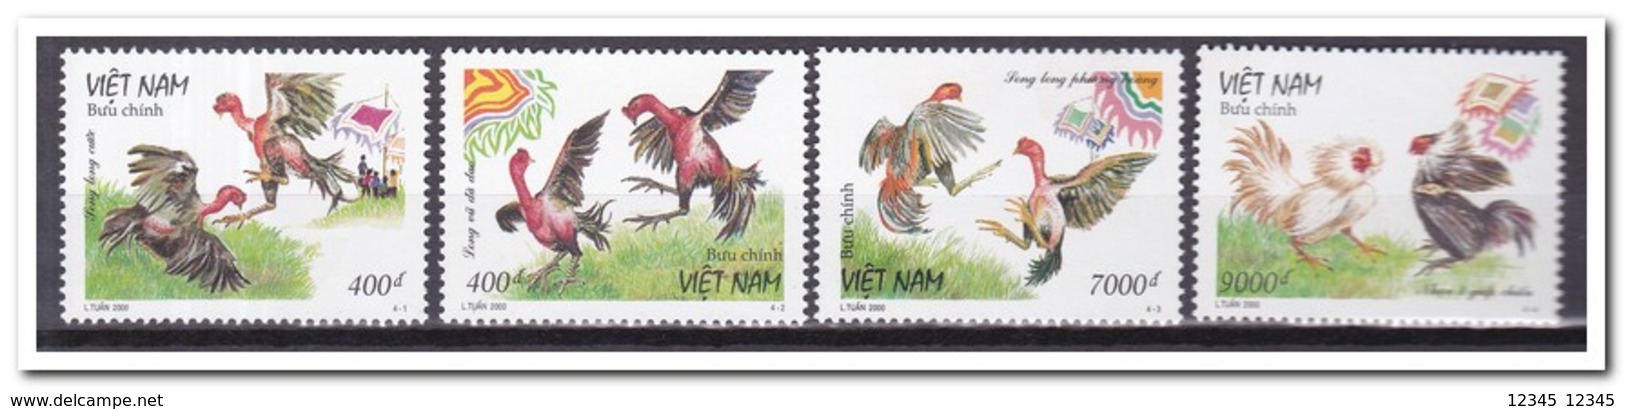 Vietnam 2000, Postfris MNH, Birds - Vietnam